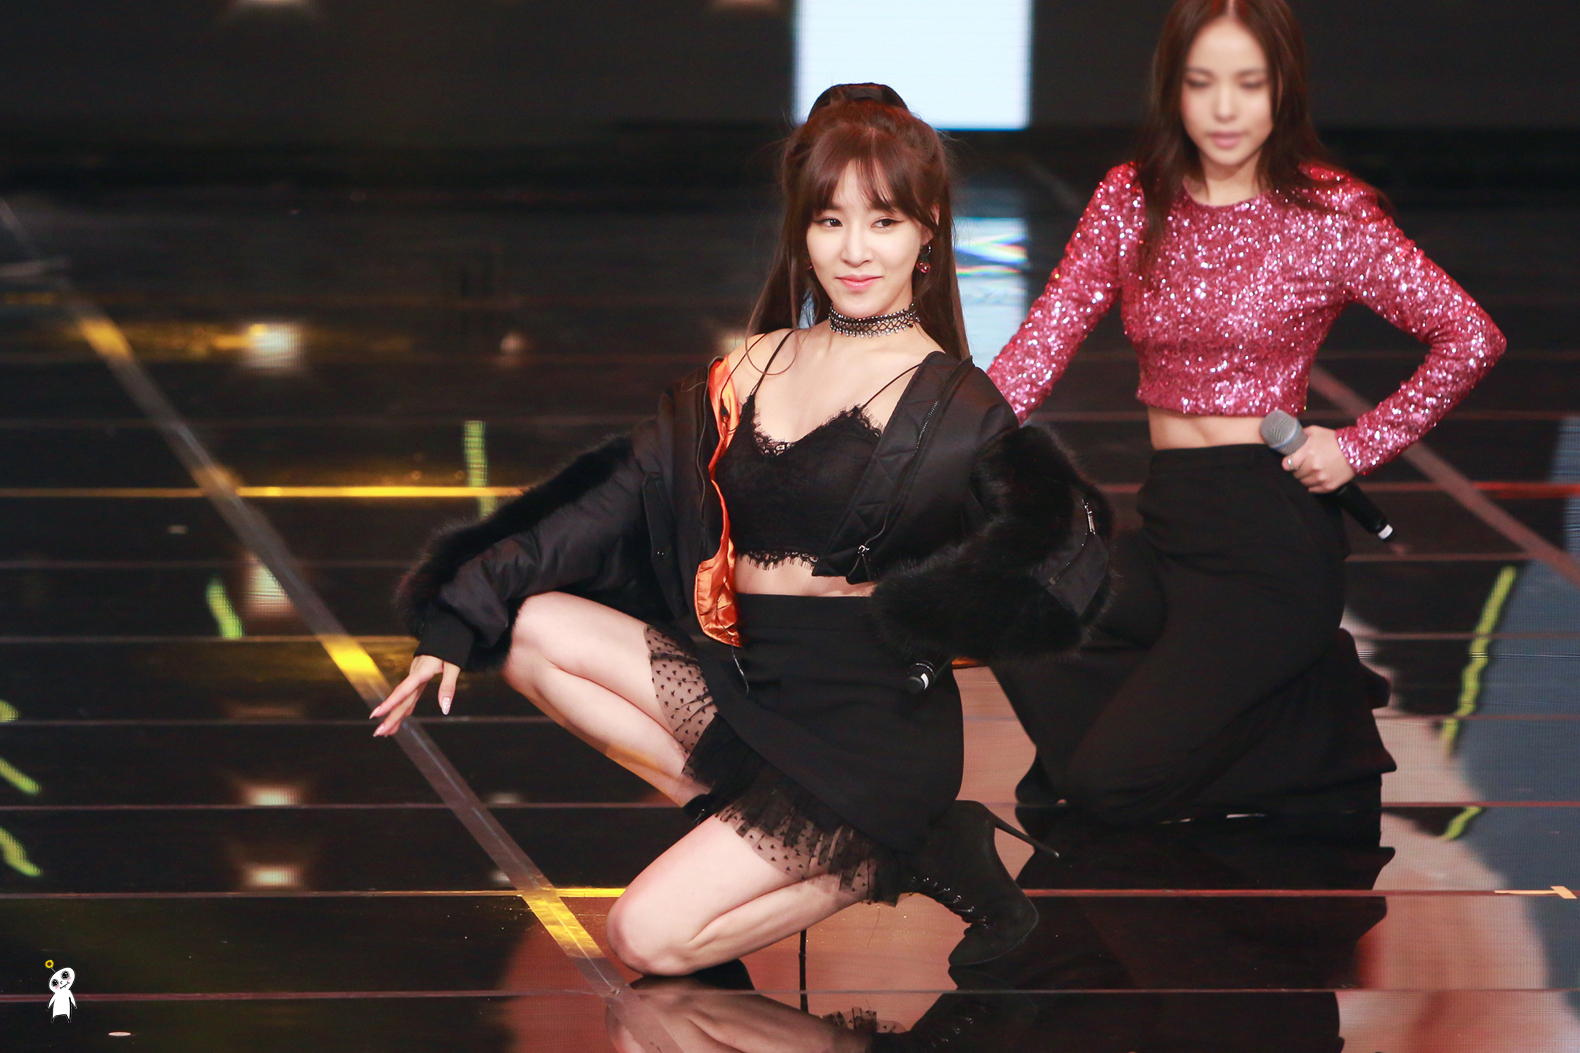 [PIC][24-12-2016]Tiffany tham dự và biểu diễn tại “2016 KBS Entertainment Awards” vào hôm nay - Page 3 2134A03E586B6FFF1CA67C